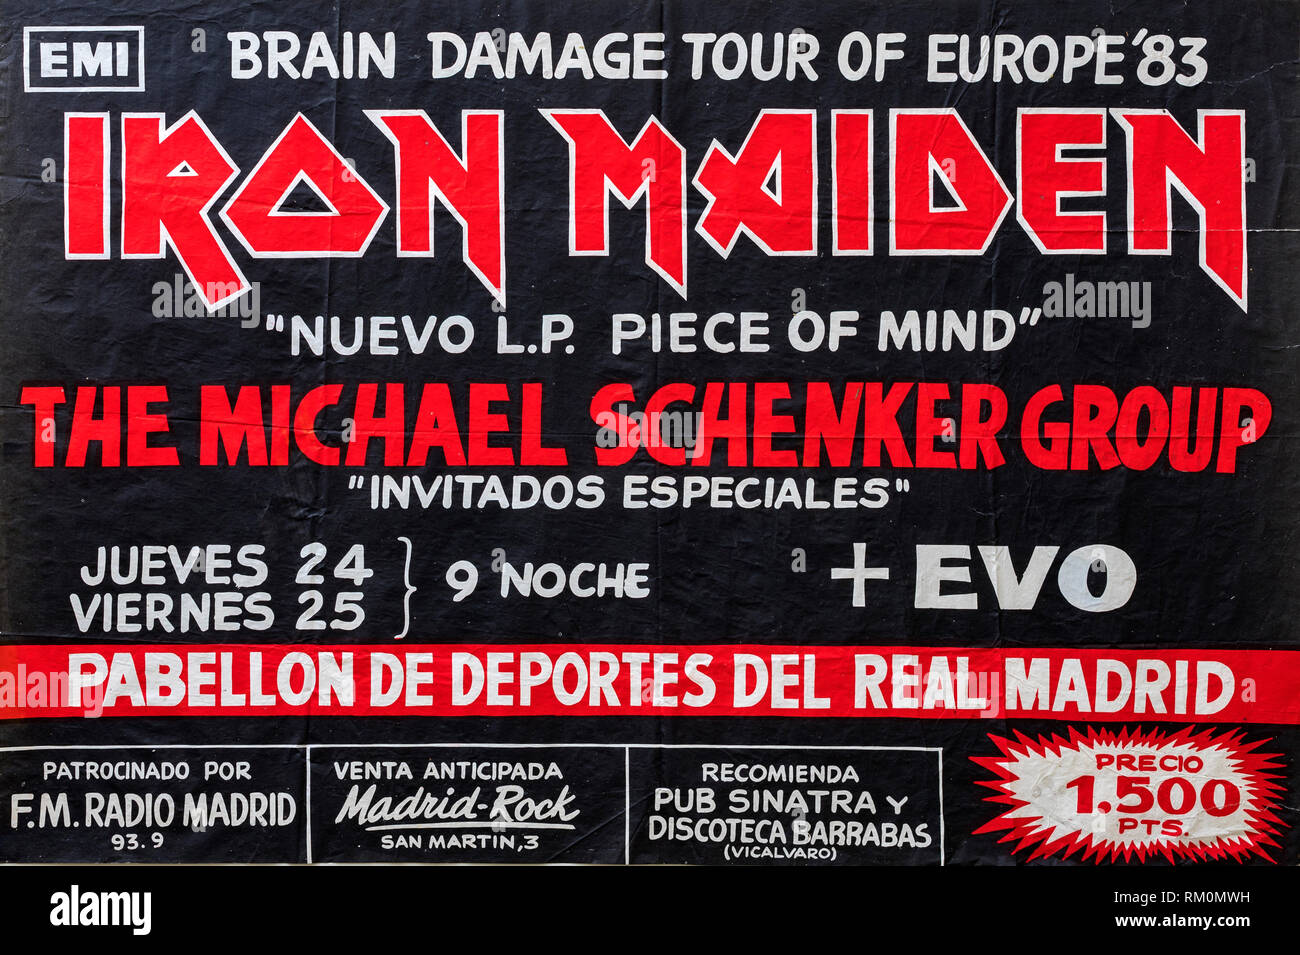 Iron Maiden e un pezzo di mente promo album e tour 1983 Madrid, concerto musicale poster Foto Stock